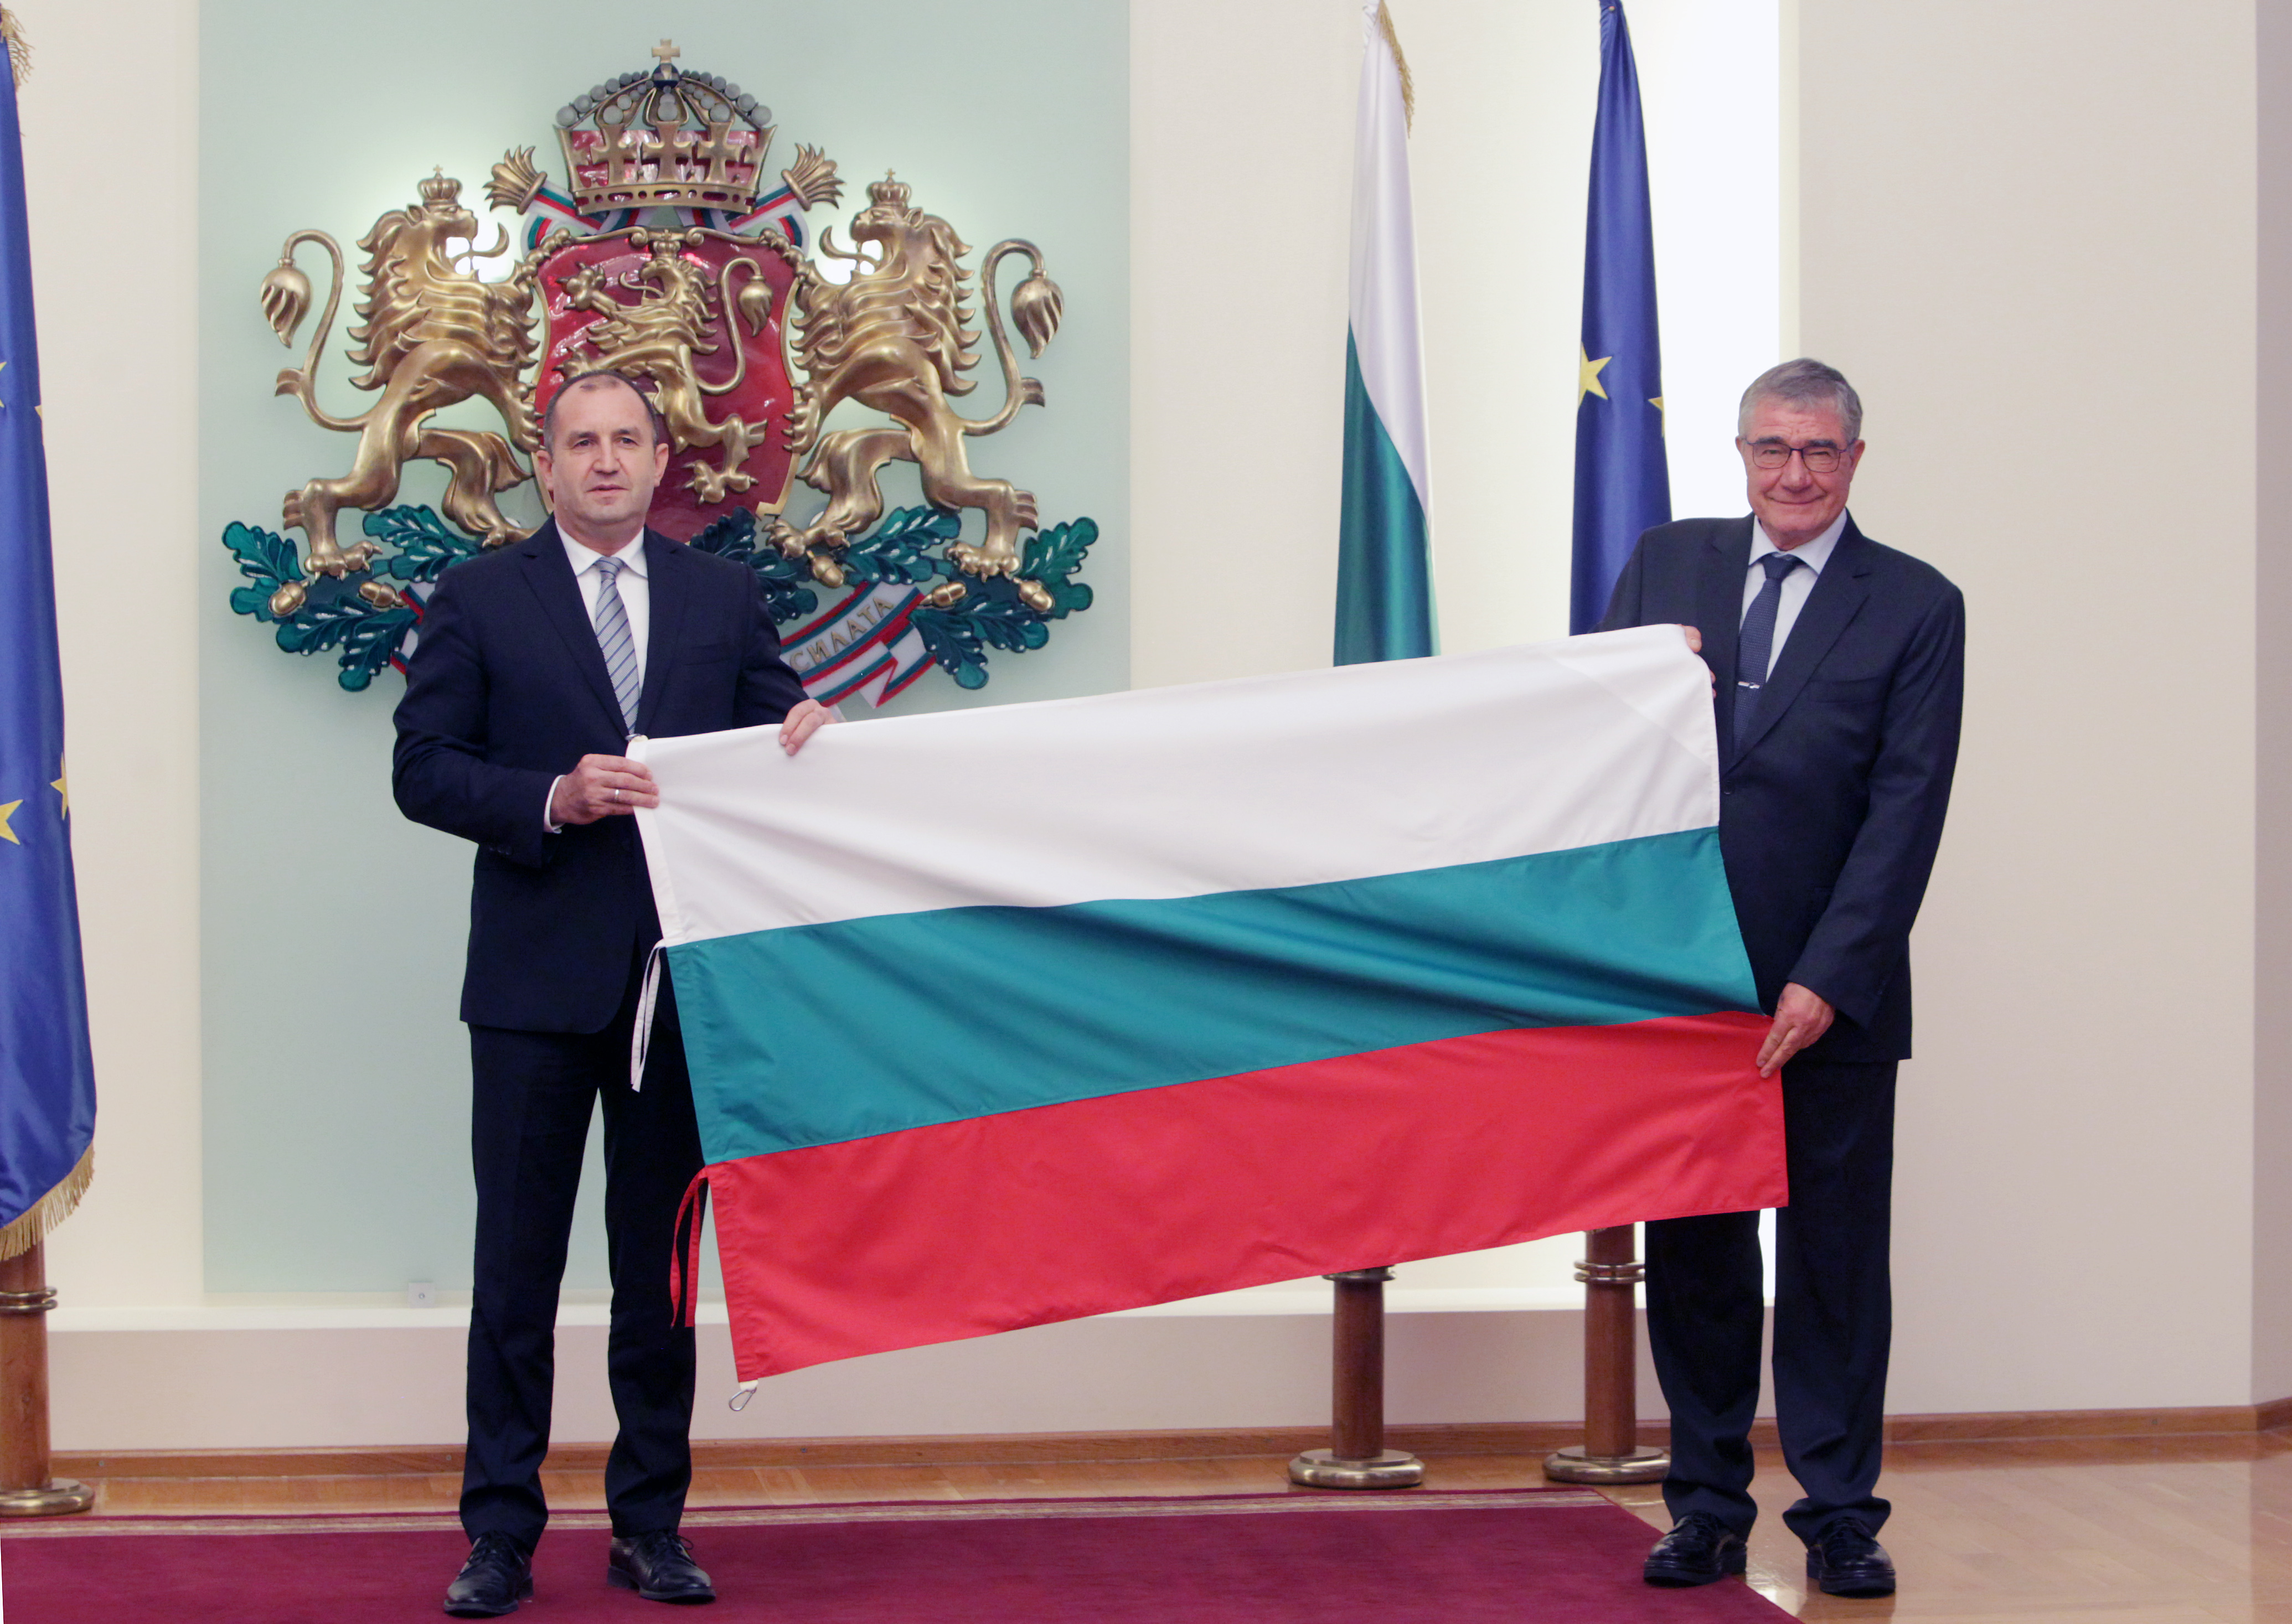 Румен Радев връчи националното знаме на проф. Пимпирев